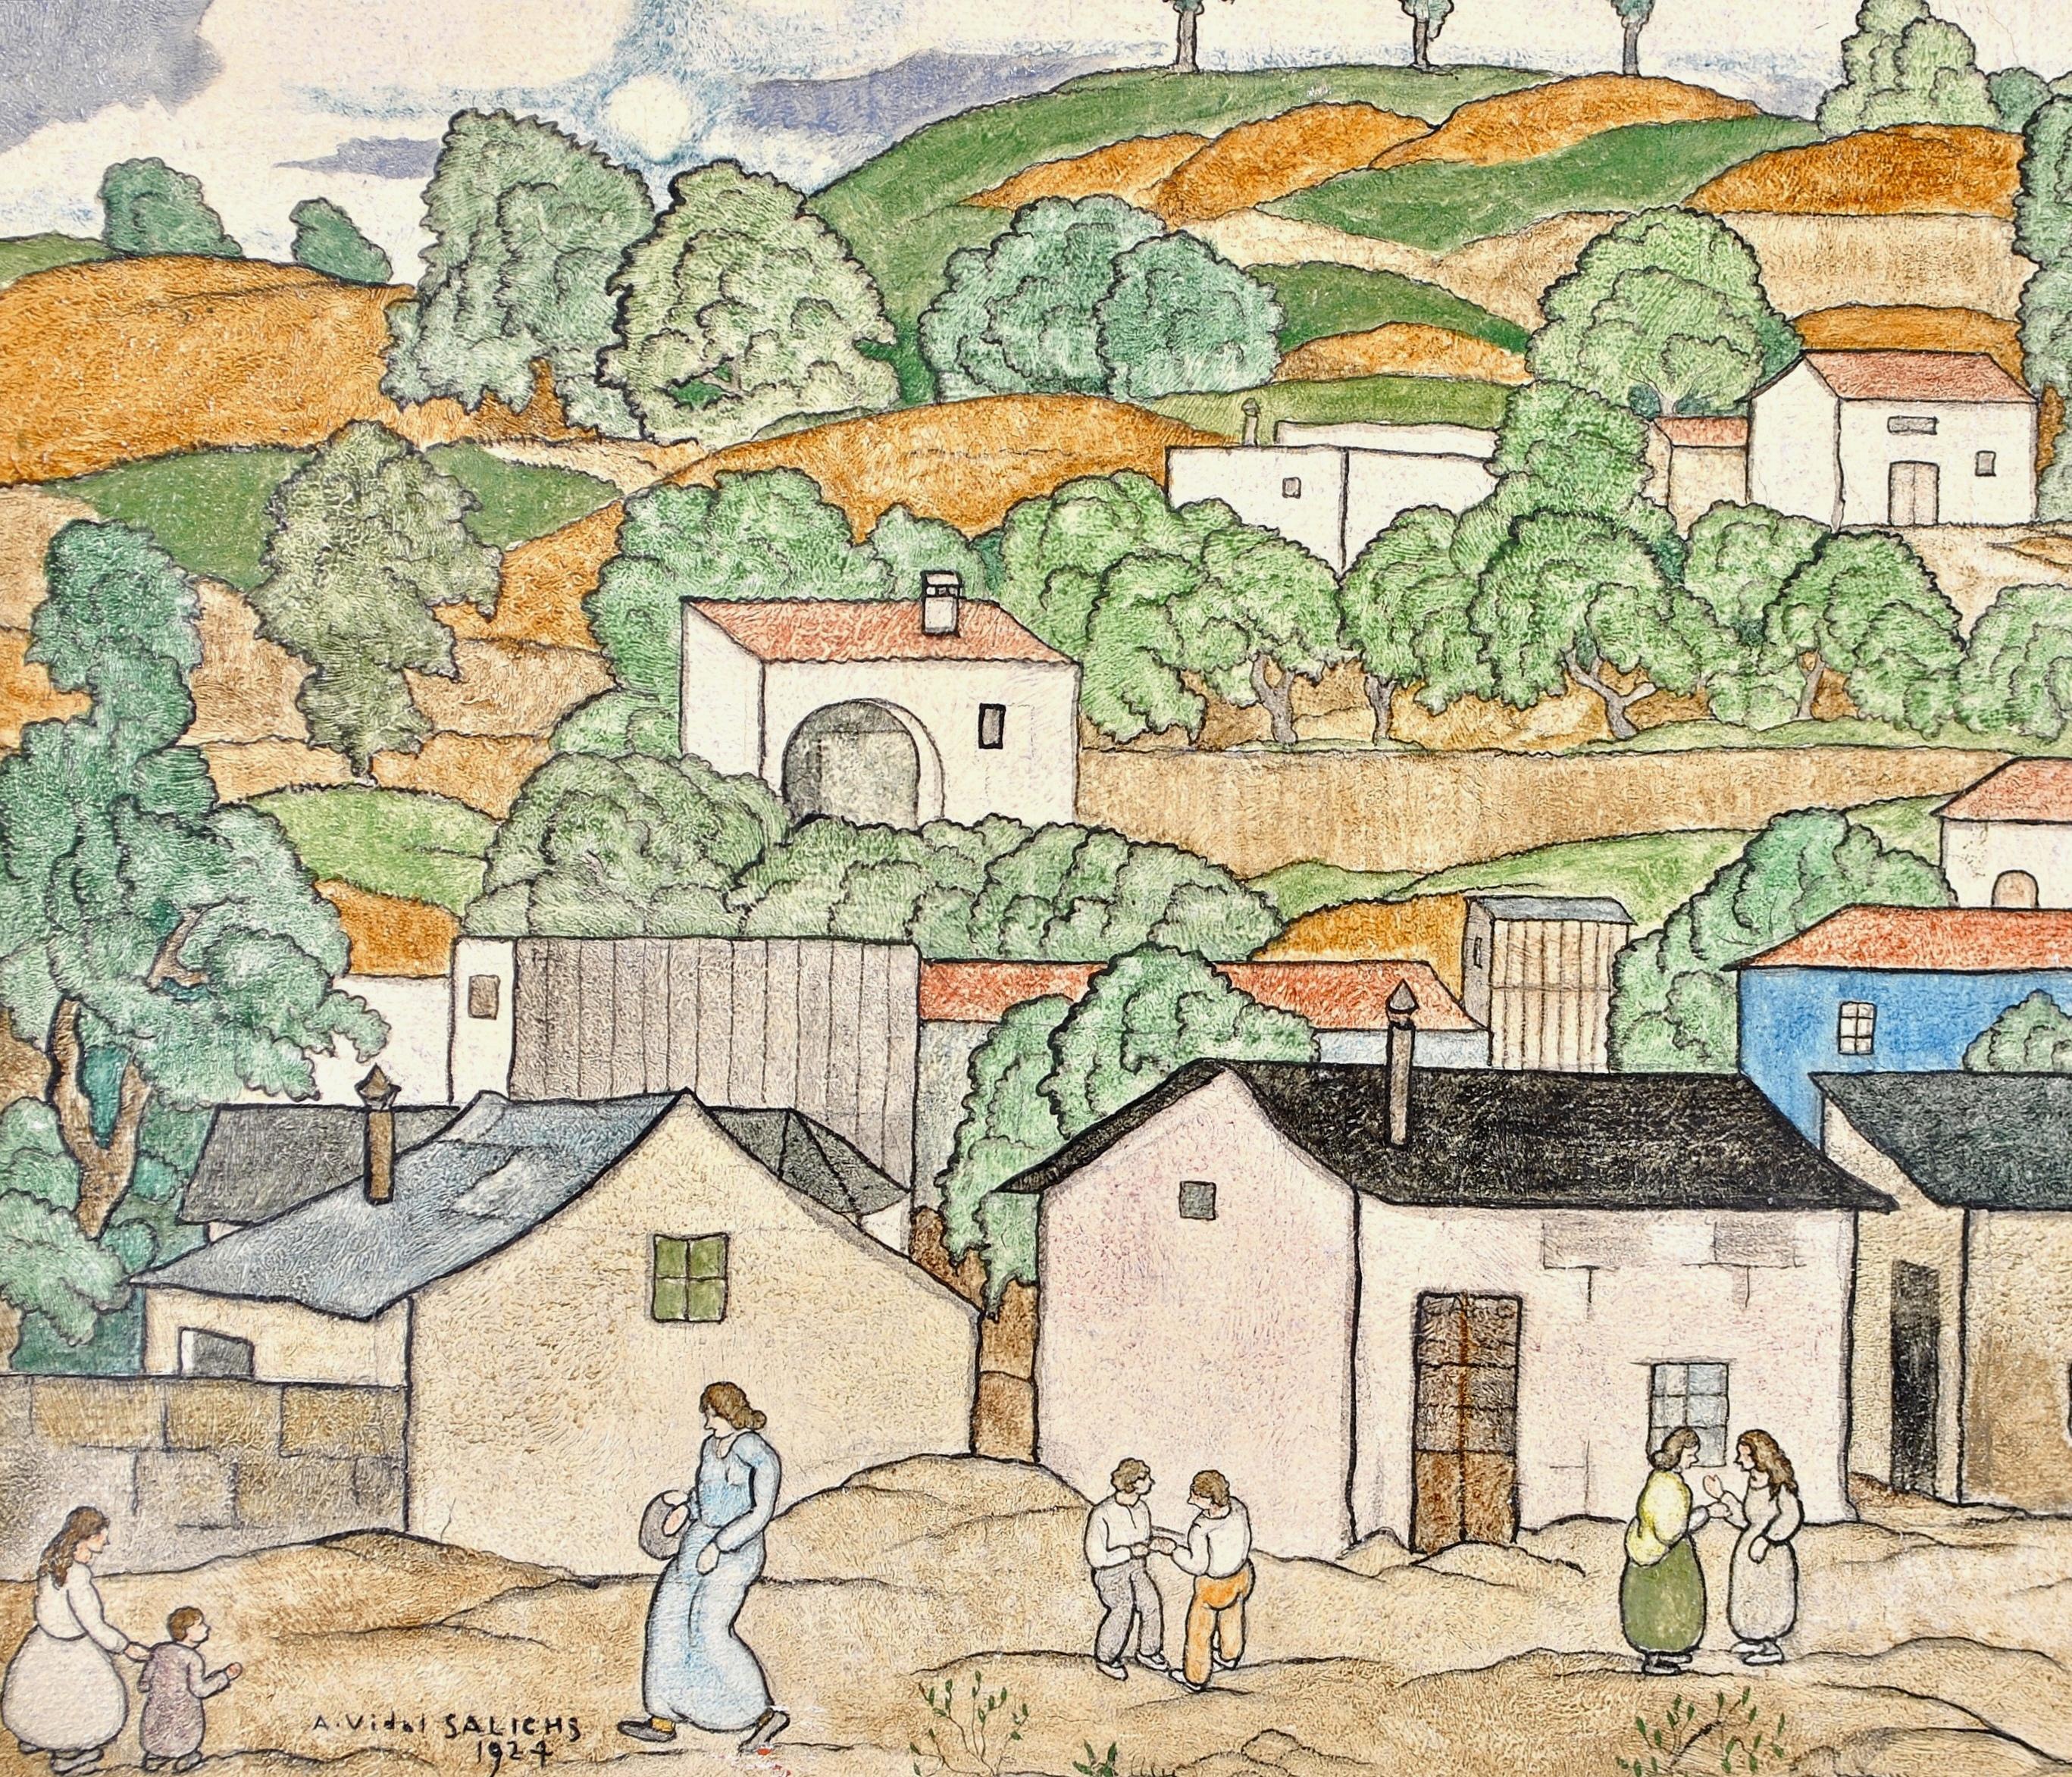 Magnifique huile sur toile naïve française du début du 20e siècle d'Agapit Vidal Salichs représentant des personnages dans un paysage, probablement de Provence. 

L'œuvre est signée et datée de 1924 en bas à gauche et est présentée dans un